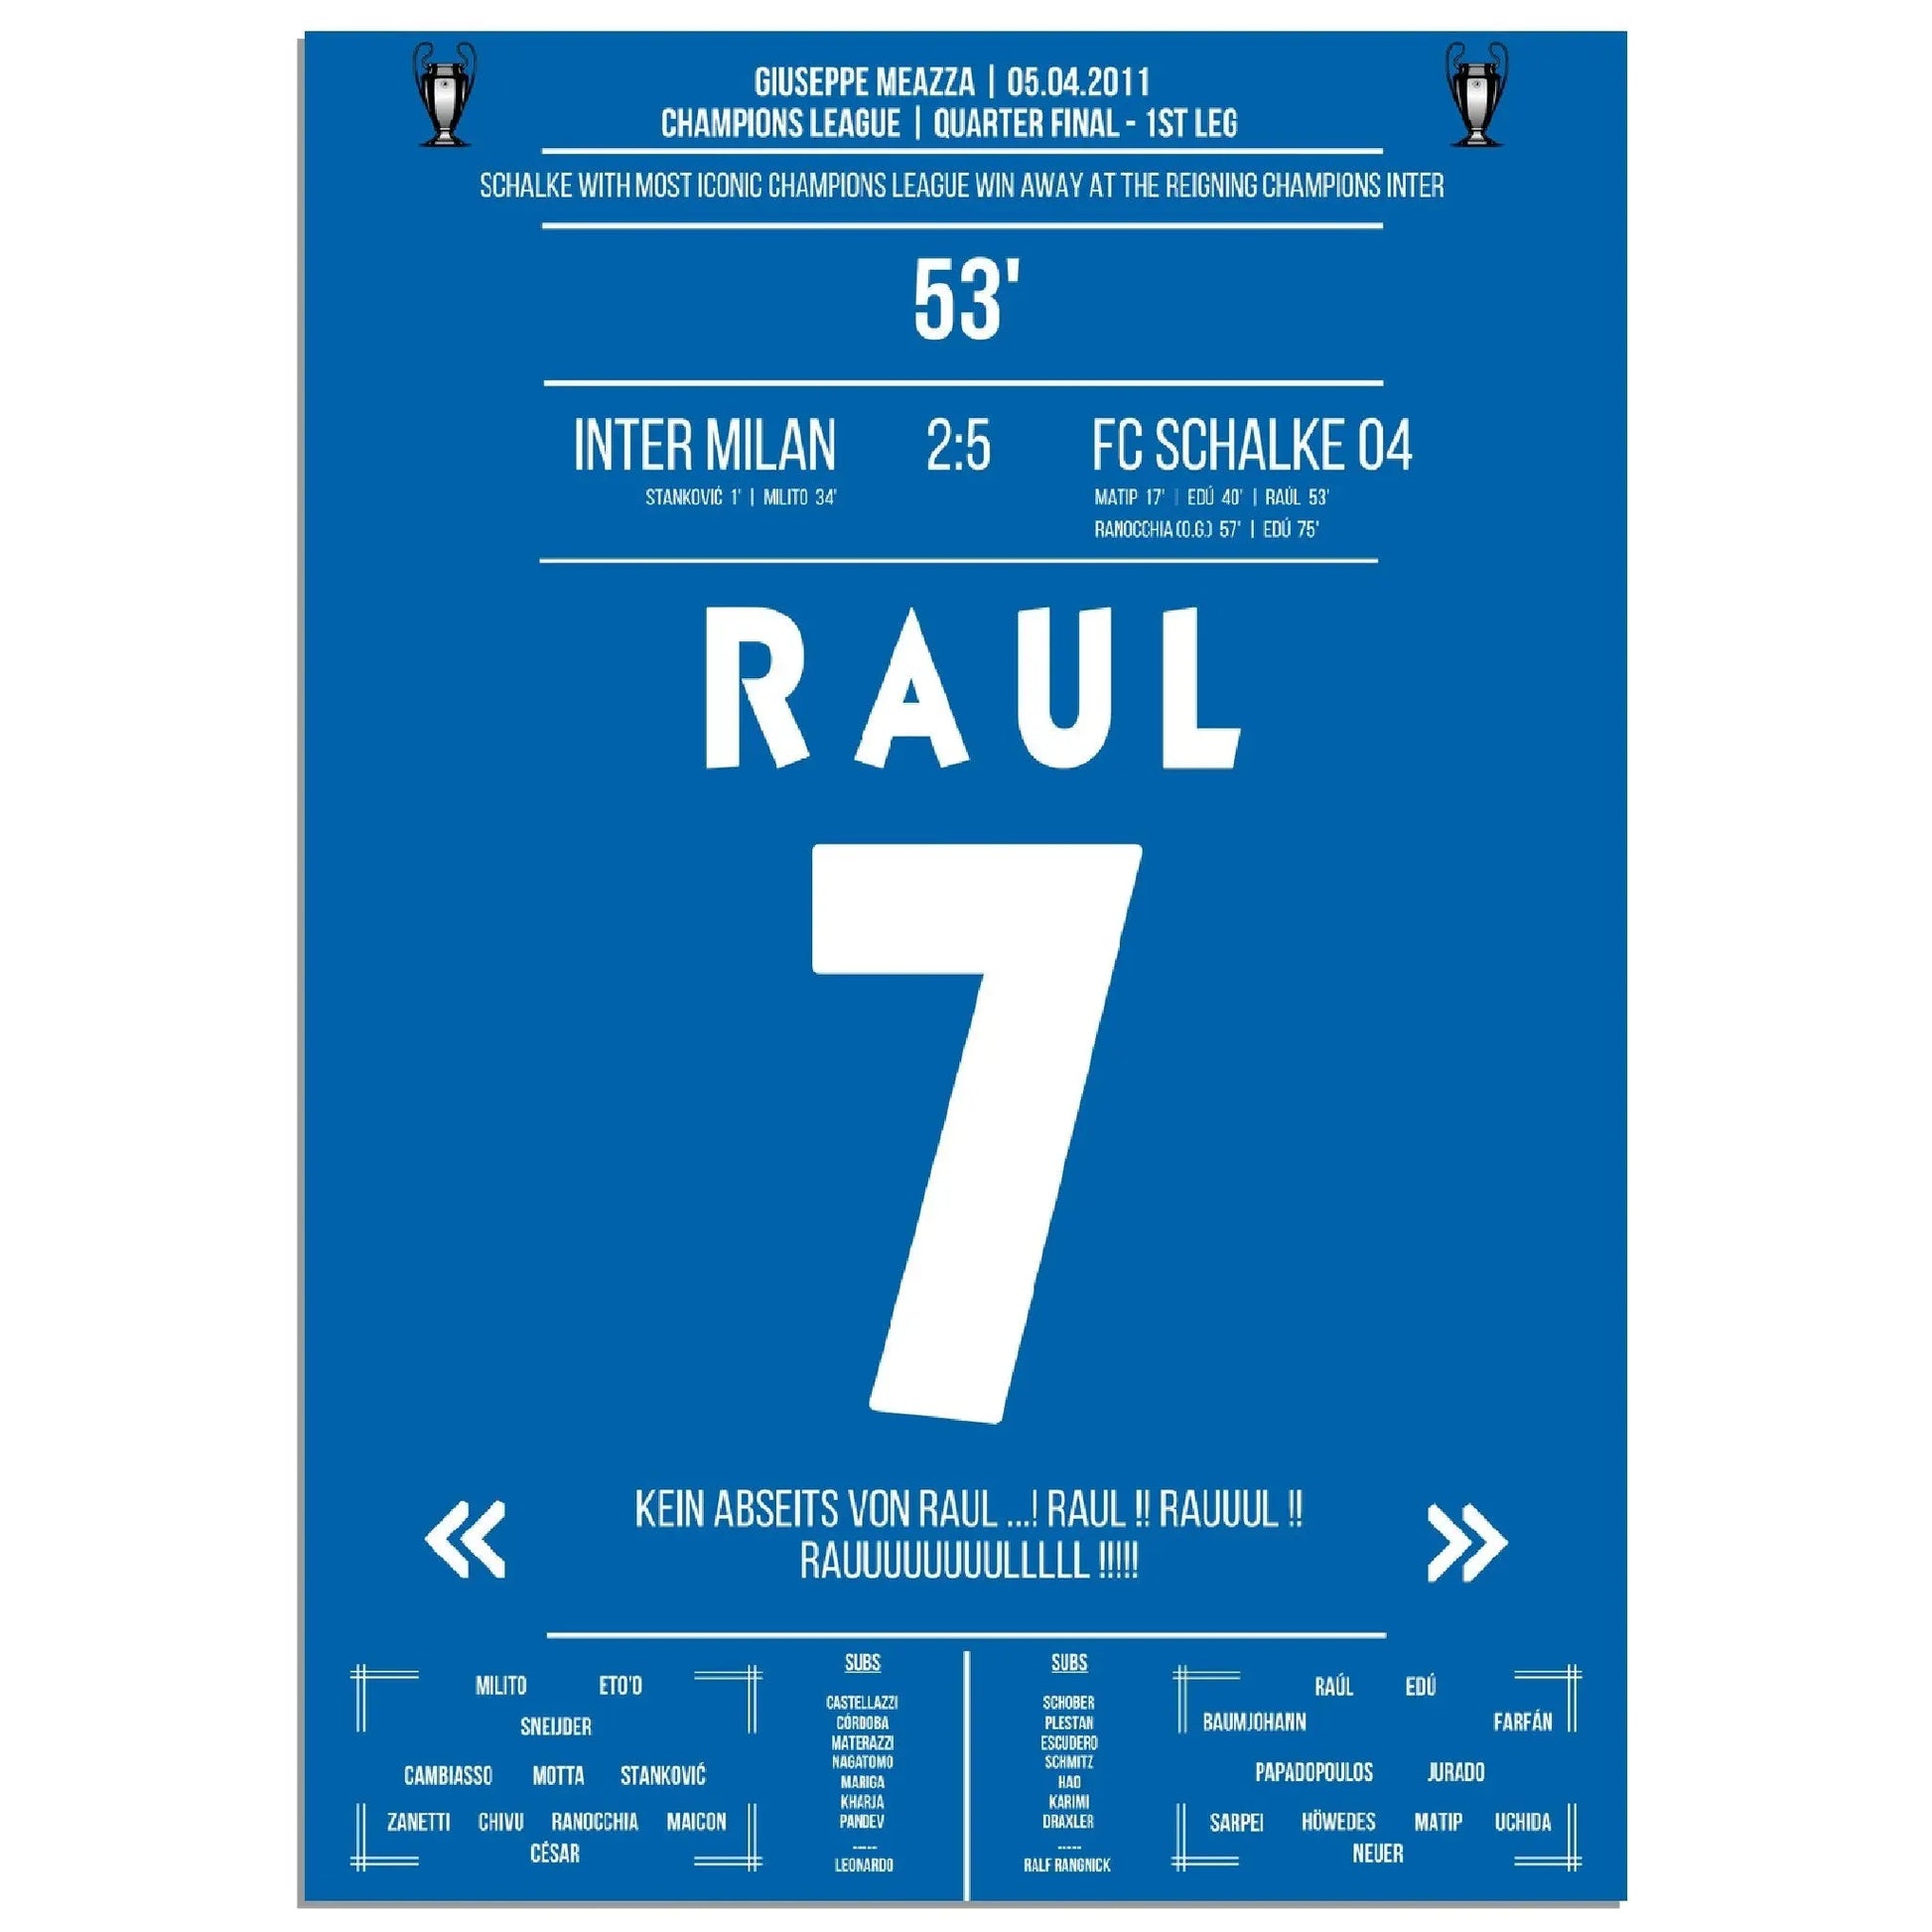 Raul-Show bei Gala-Sieg bei Titelverteidiger Inter im Champions League Viertelfinale 2011 